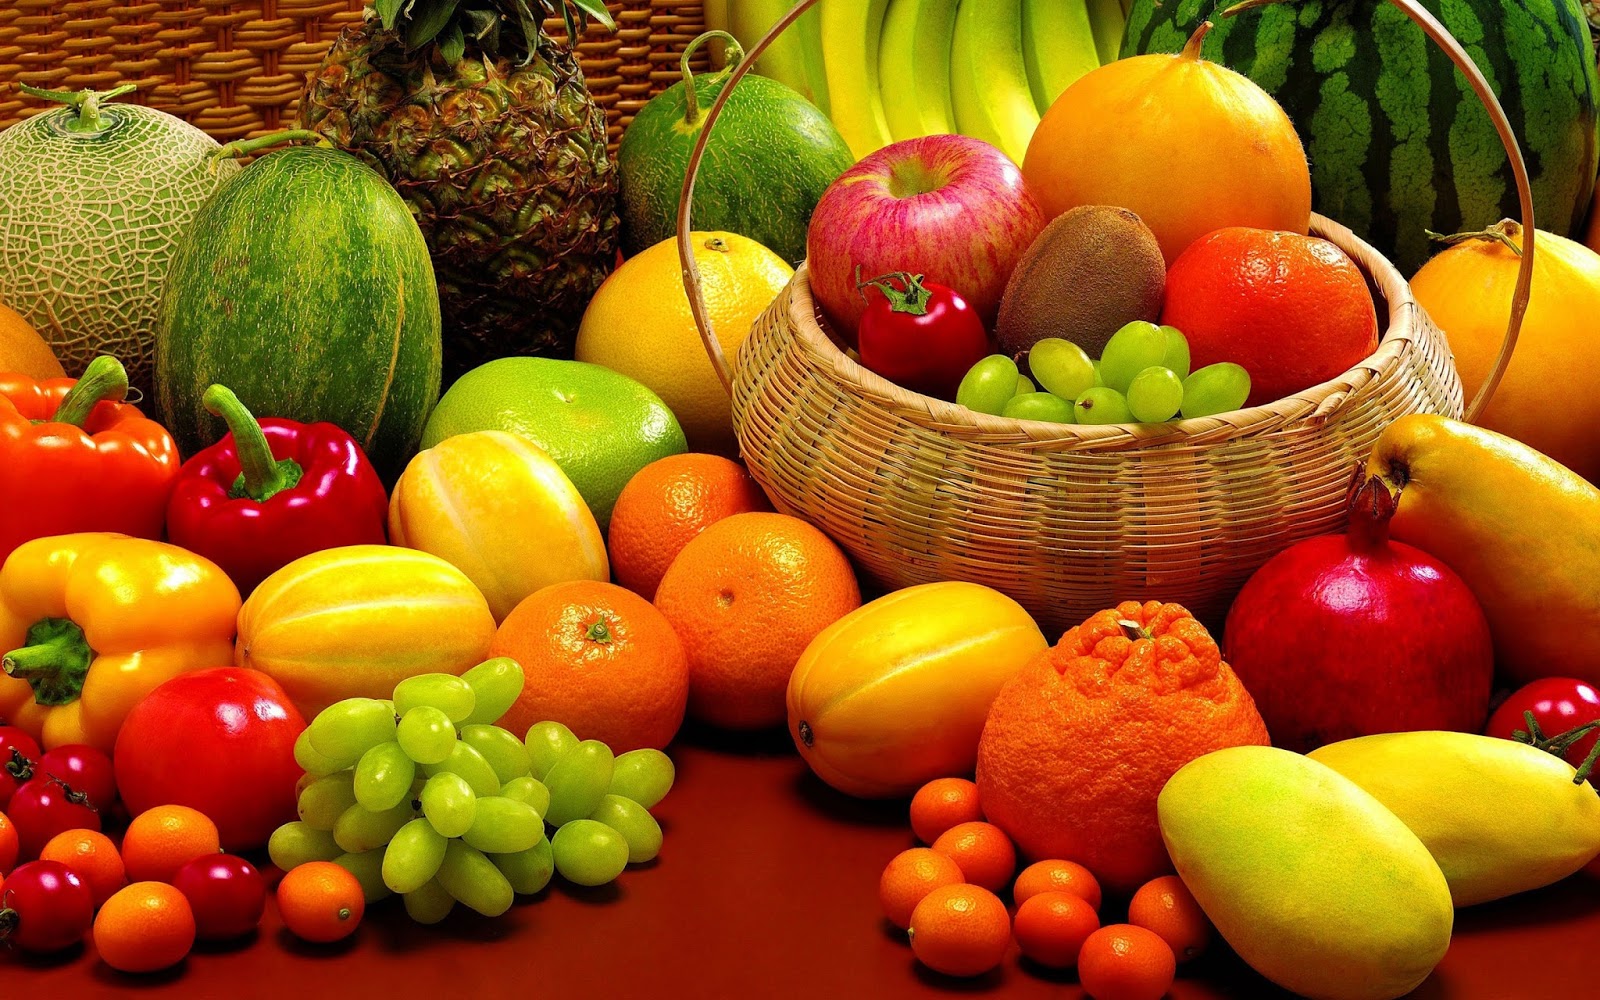 تفسير حلم رؤية الفاكهة في المنام تعرف على تفسير حلم رؤية الفاكهة